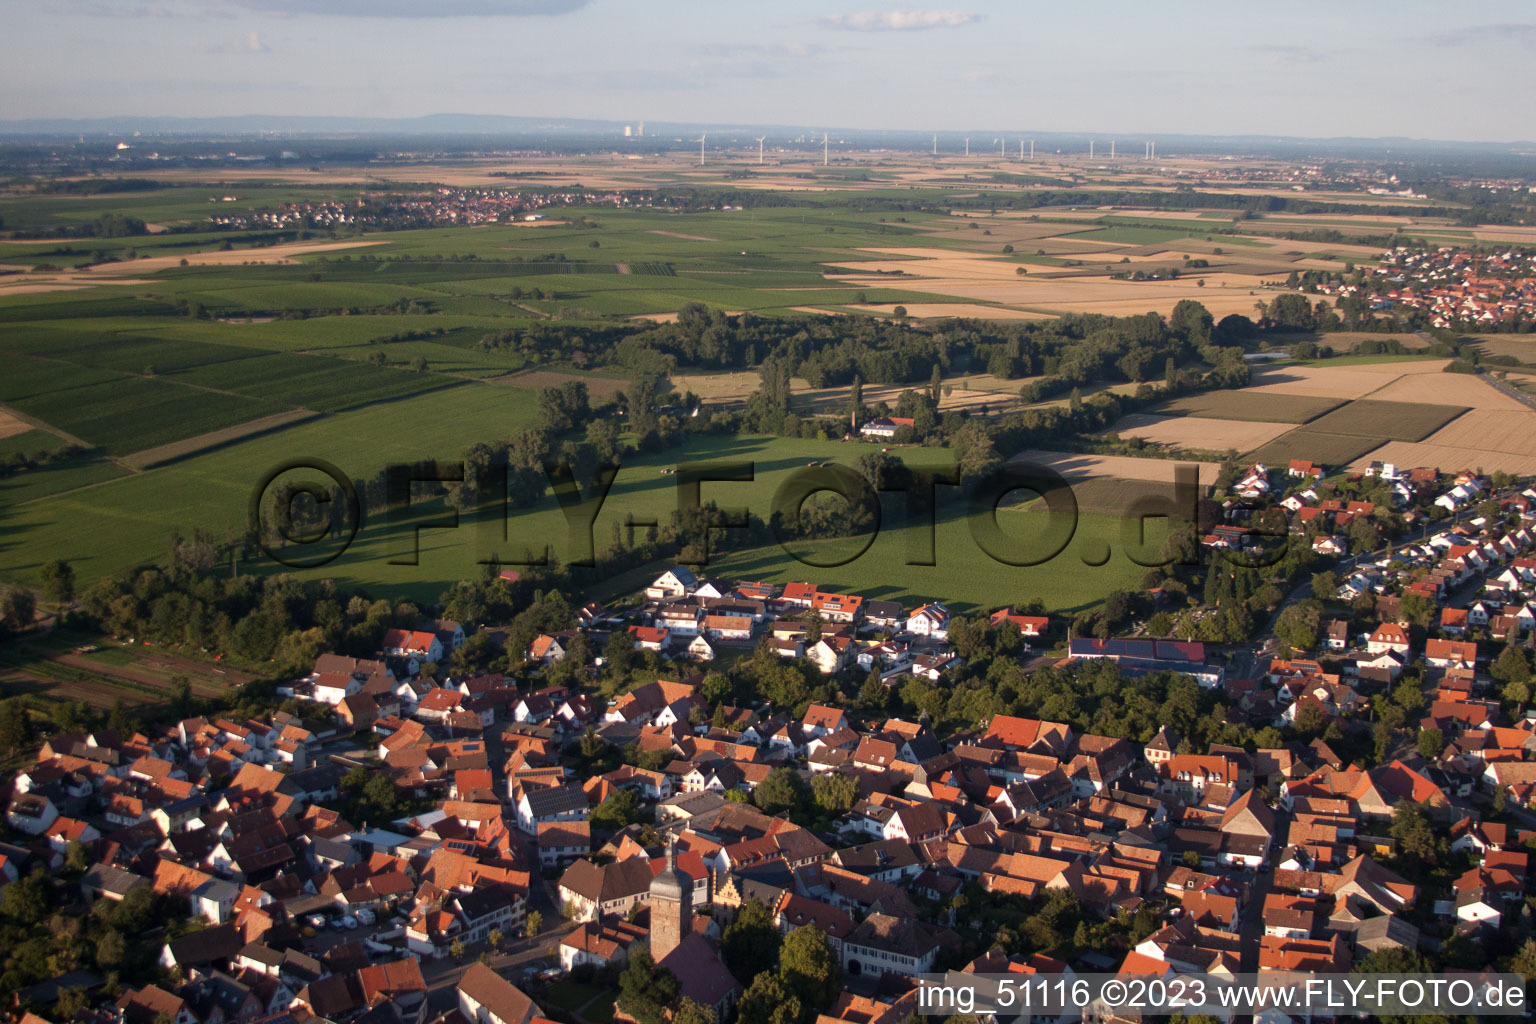 Bird's eye view of District Billigheim in Billigheim-Ingenheim in the state Rhineland-Palatinate, Germany